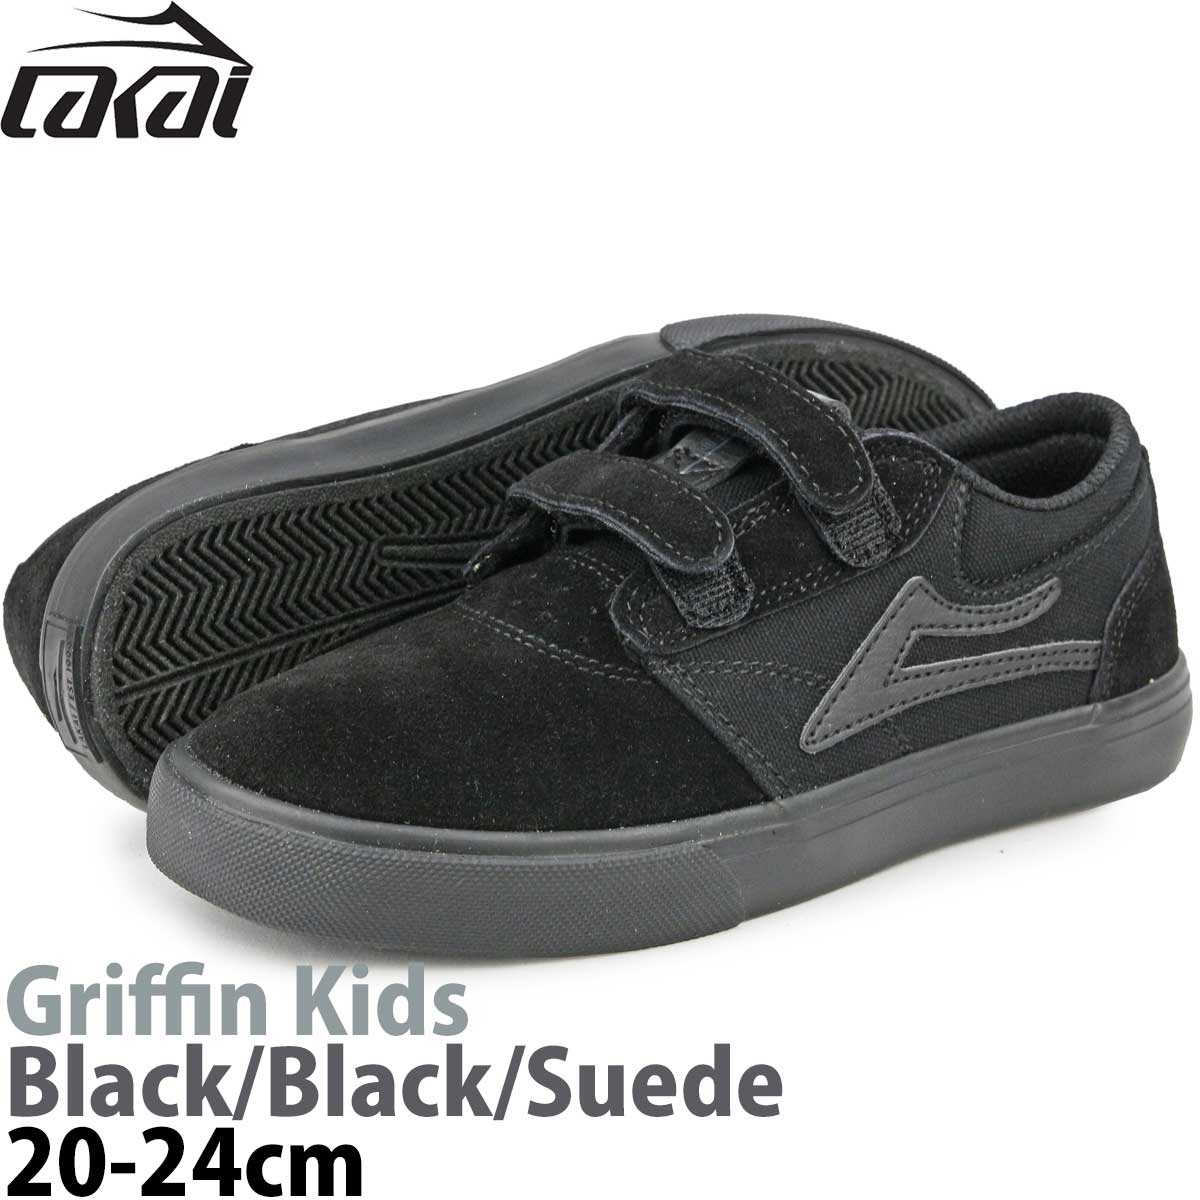 ラカイ 17.5-24cm グリフィン キッズ ブラック スエード Lakai Griffin Kids Black スケートボード スケボー  スケシュー 靴 スニーカー スケボーシューズ